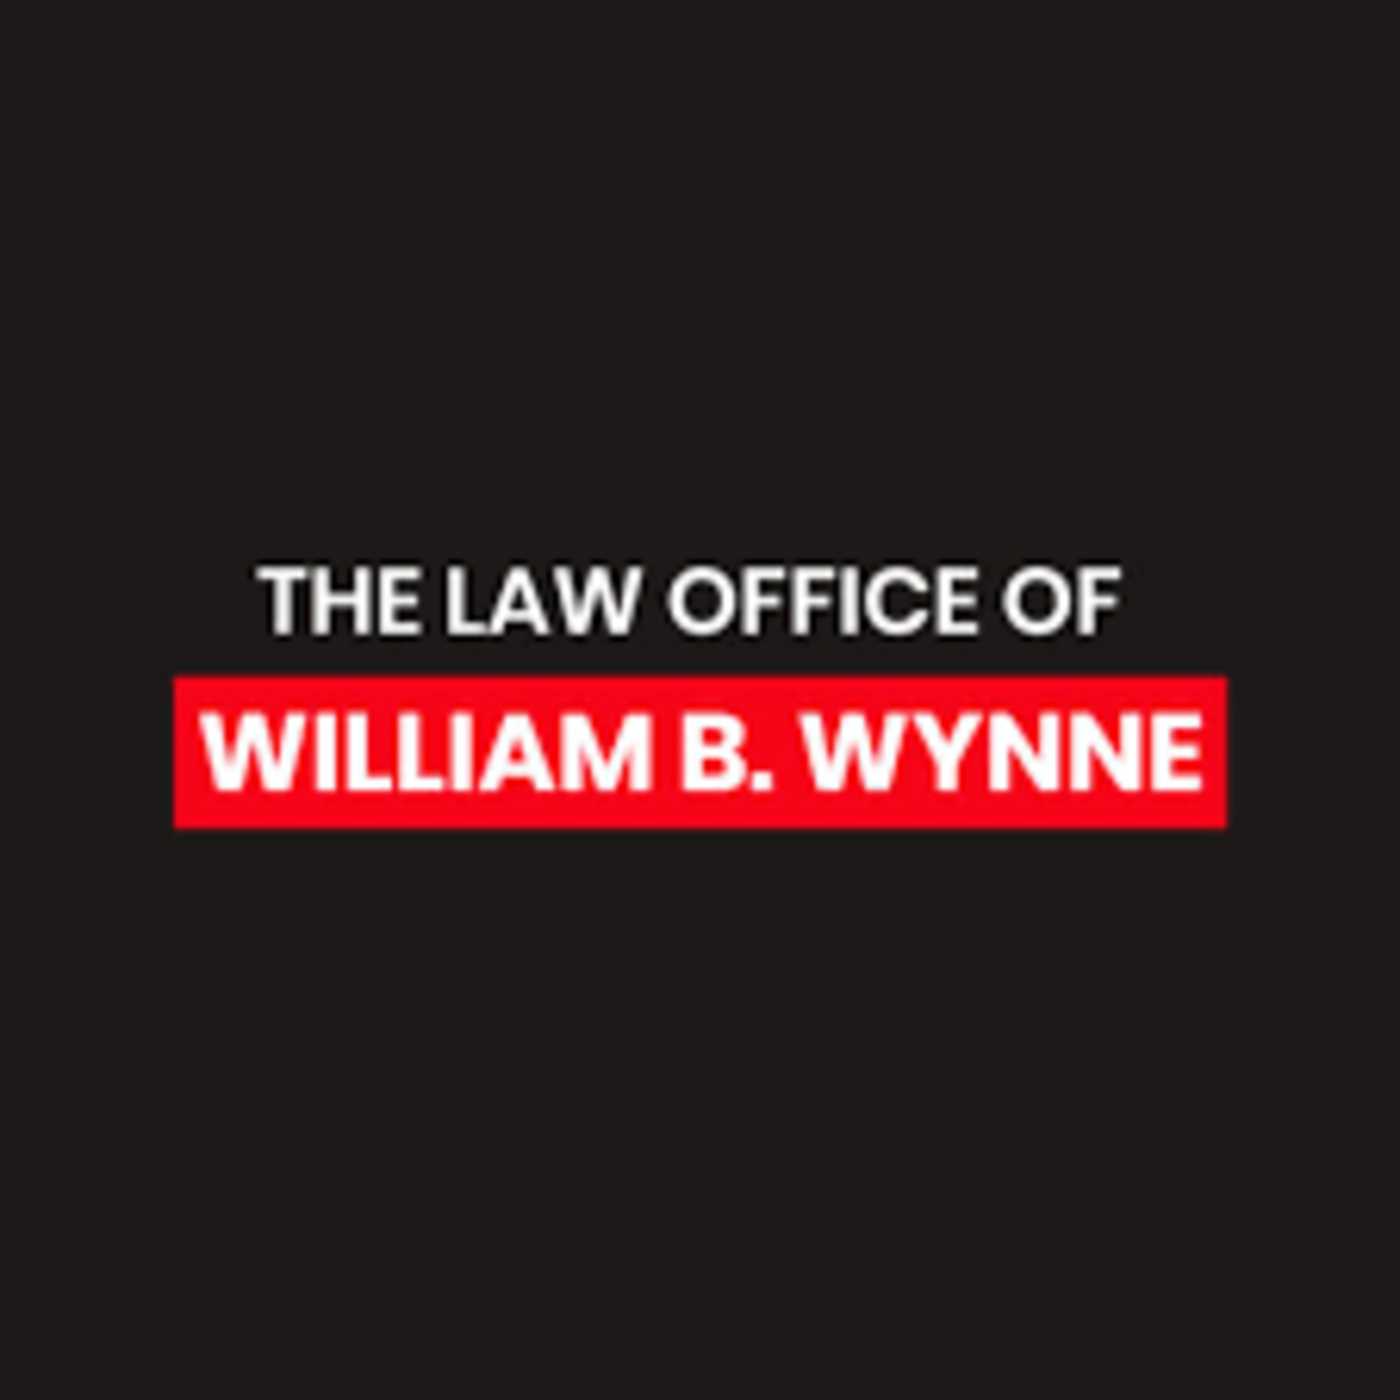 William BWynne